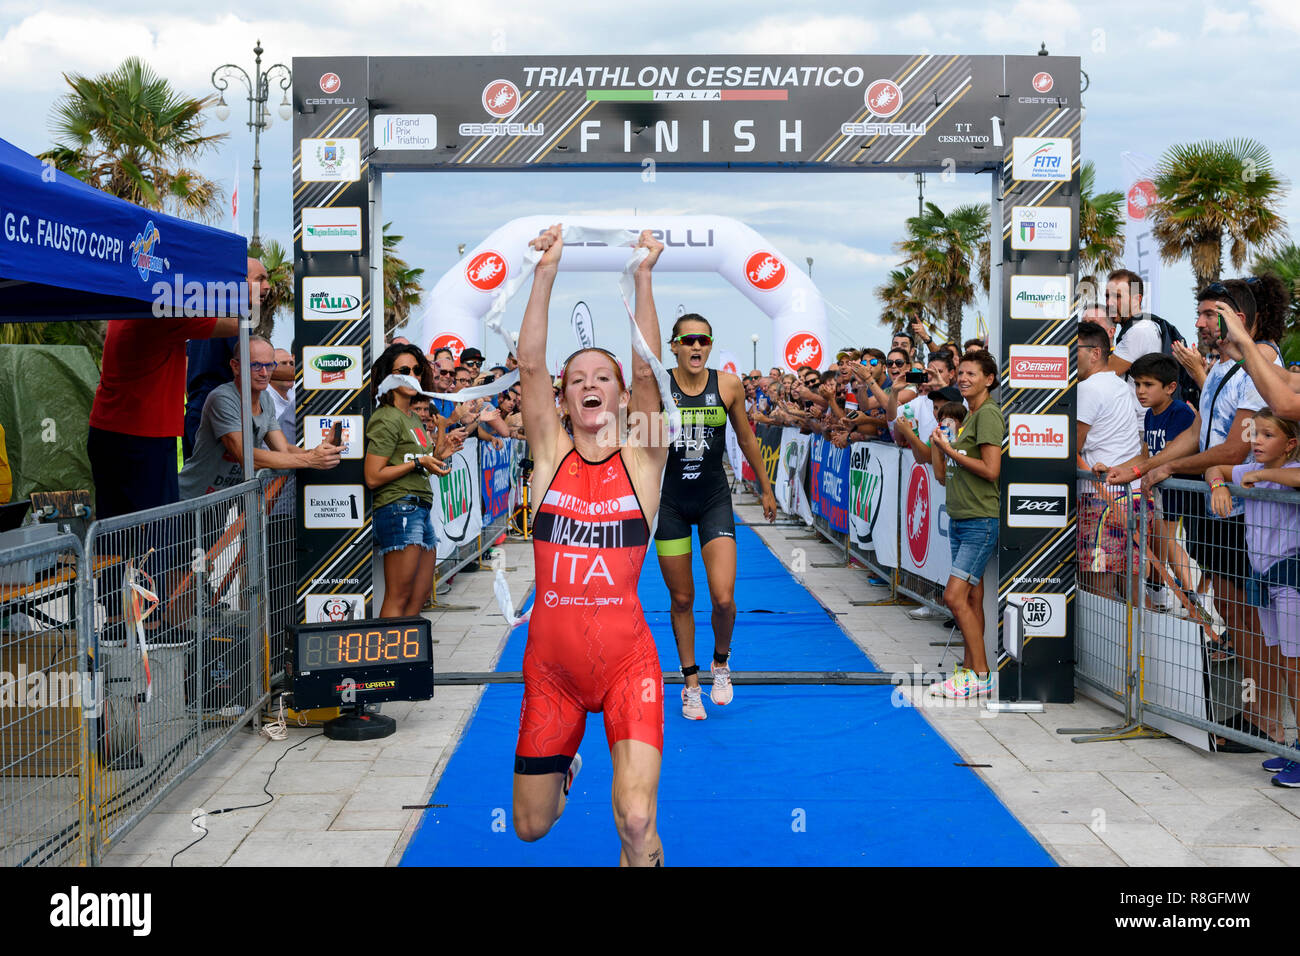 CESENATICO, Italia - 09 settembre 2017: Triathlon Cesenatico, la femmina vincitore Annamaria Mazzetti attraversa la linea del traguardo vincendo in volata. Foto Stock